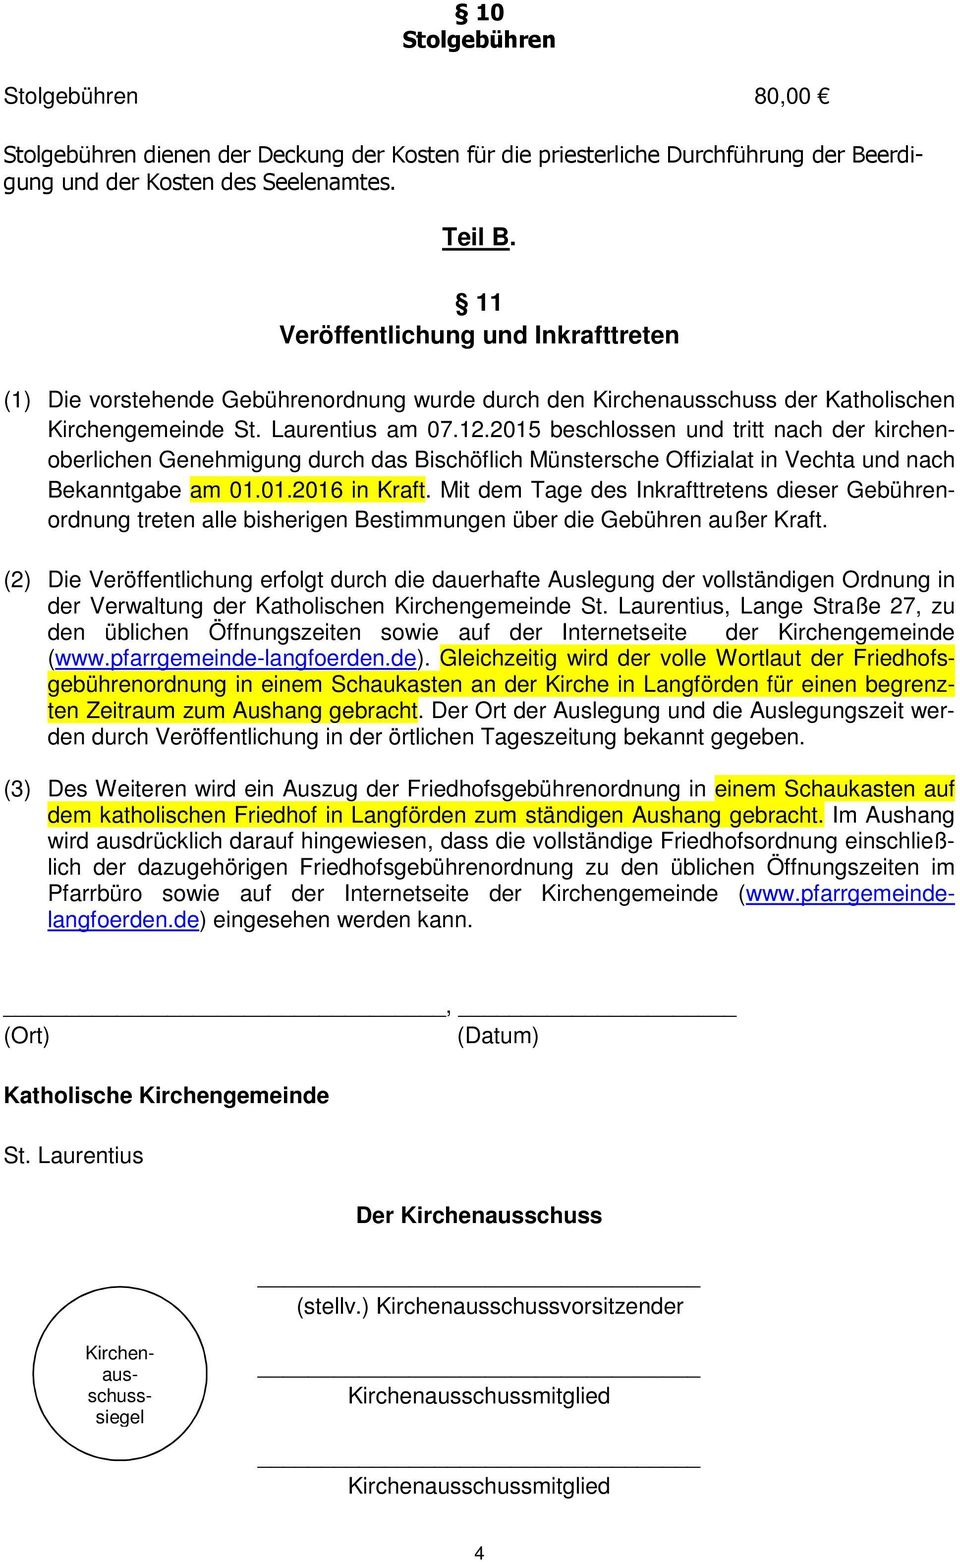 2015 beschlossen und tritt nach der kirchenoberlichen Genehmigung durch das Bischöflich Münstersche Offizialat in Vechta und nach Bekanntgabe am 01.01.2016 in Kraft.